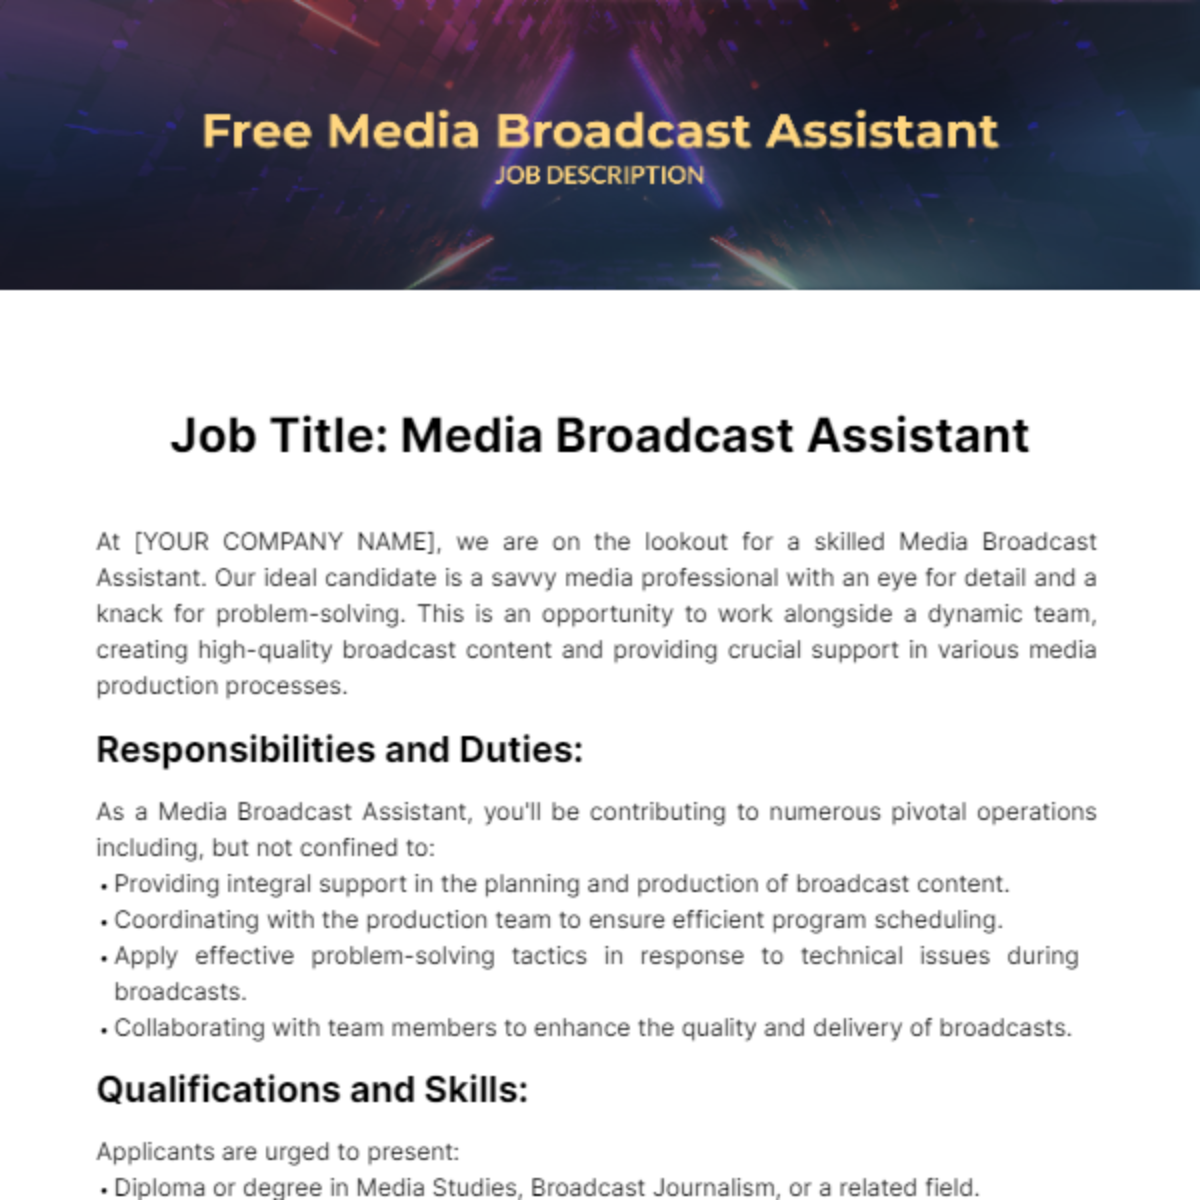 Free Media Broadcast Assistant Job Description Template